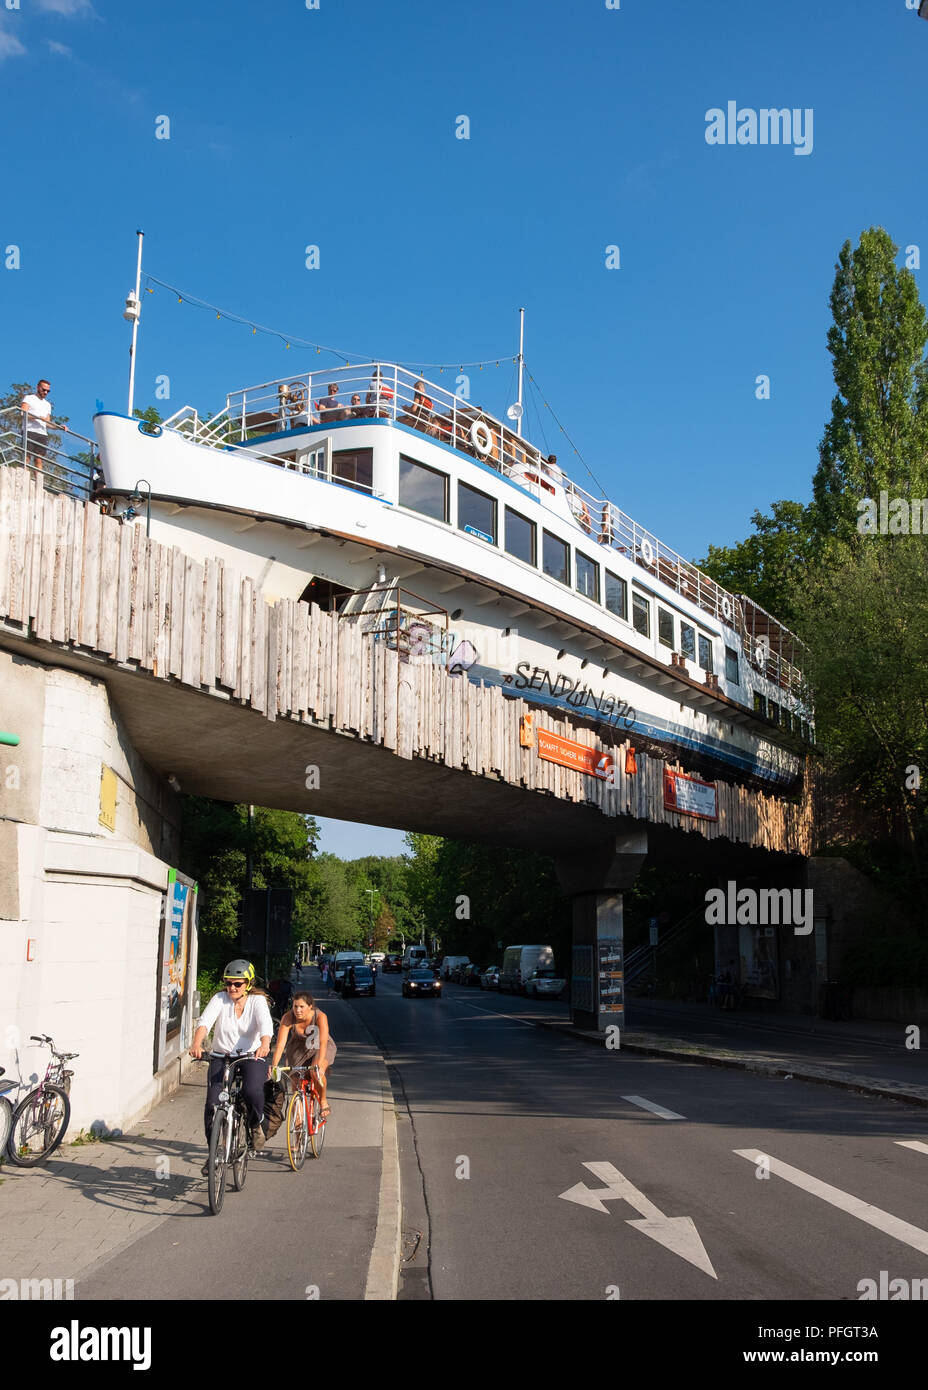 Alte Utting, ex nave passeggeri convertito in un ristorante ora posto su una ferrovia ponte in disuso a Monaco di Baviera, Germania. Foto Stock